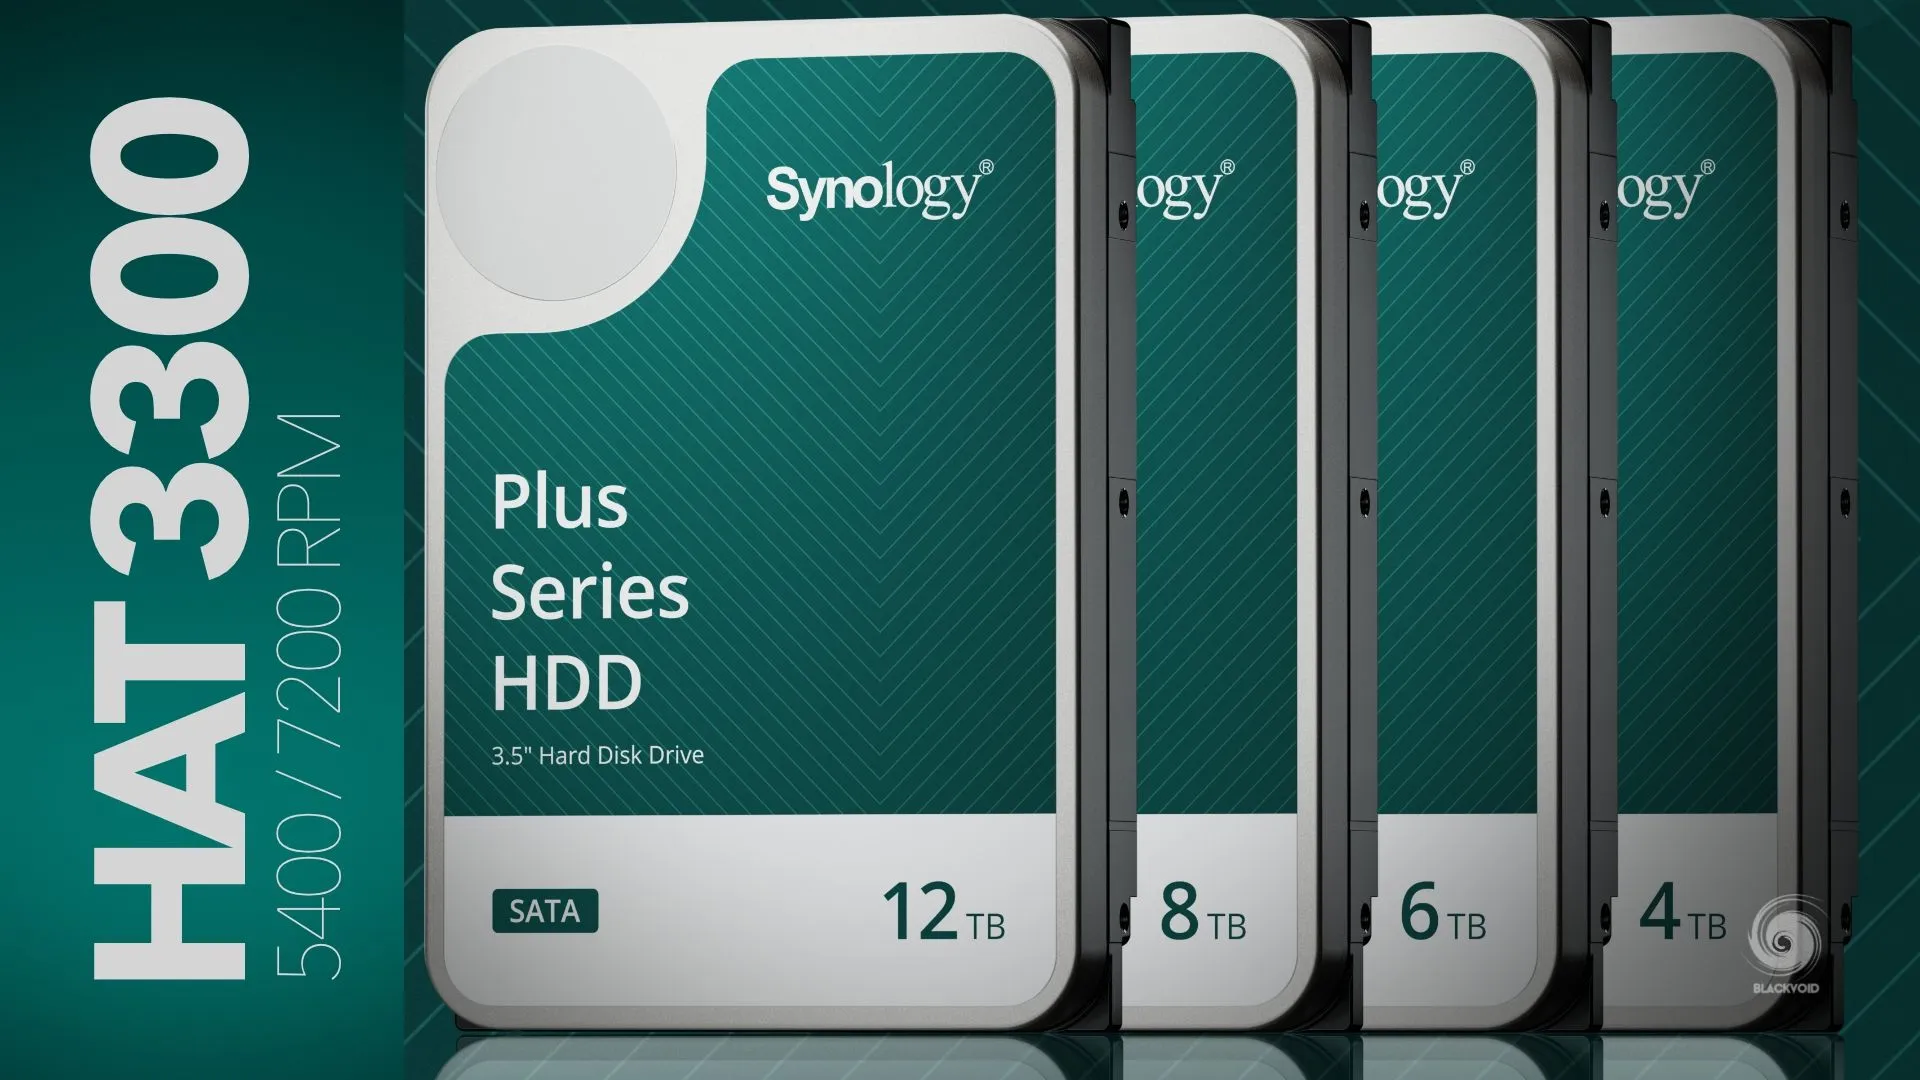 Synology ra mắt ổ cứng HDD Plus series với 4 lựa chọn 4 TB, 6 TB, 8 TB và 12 TB